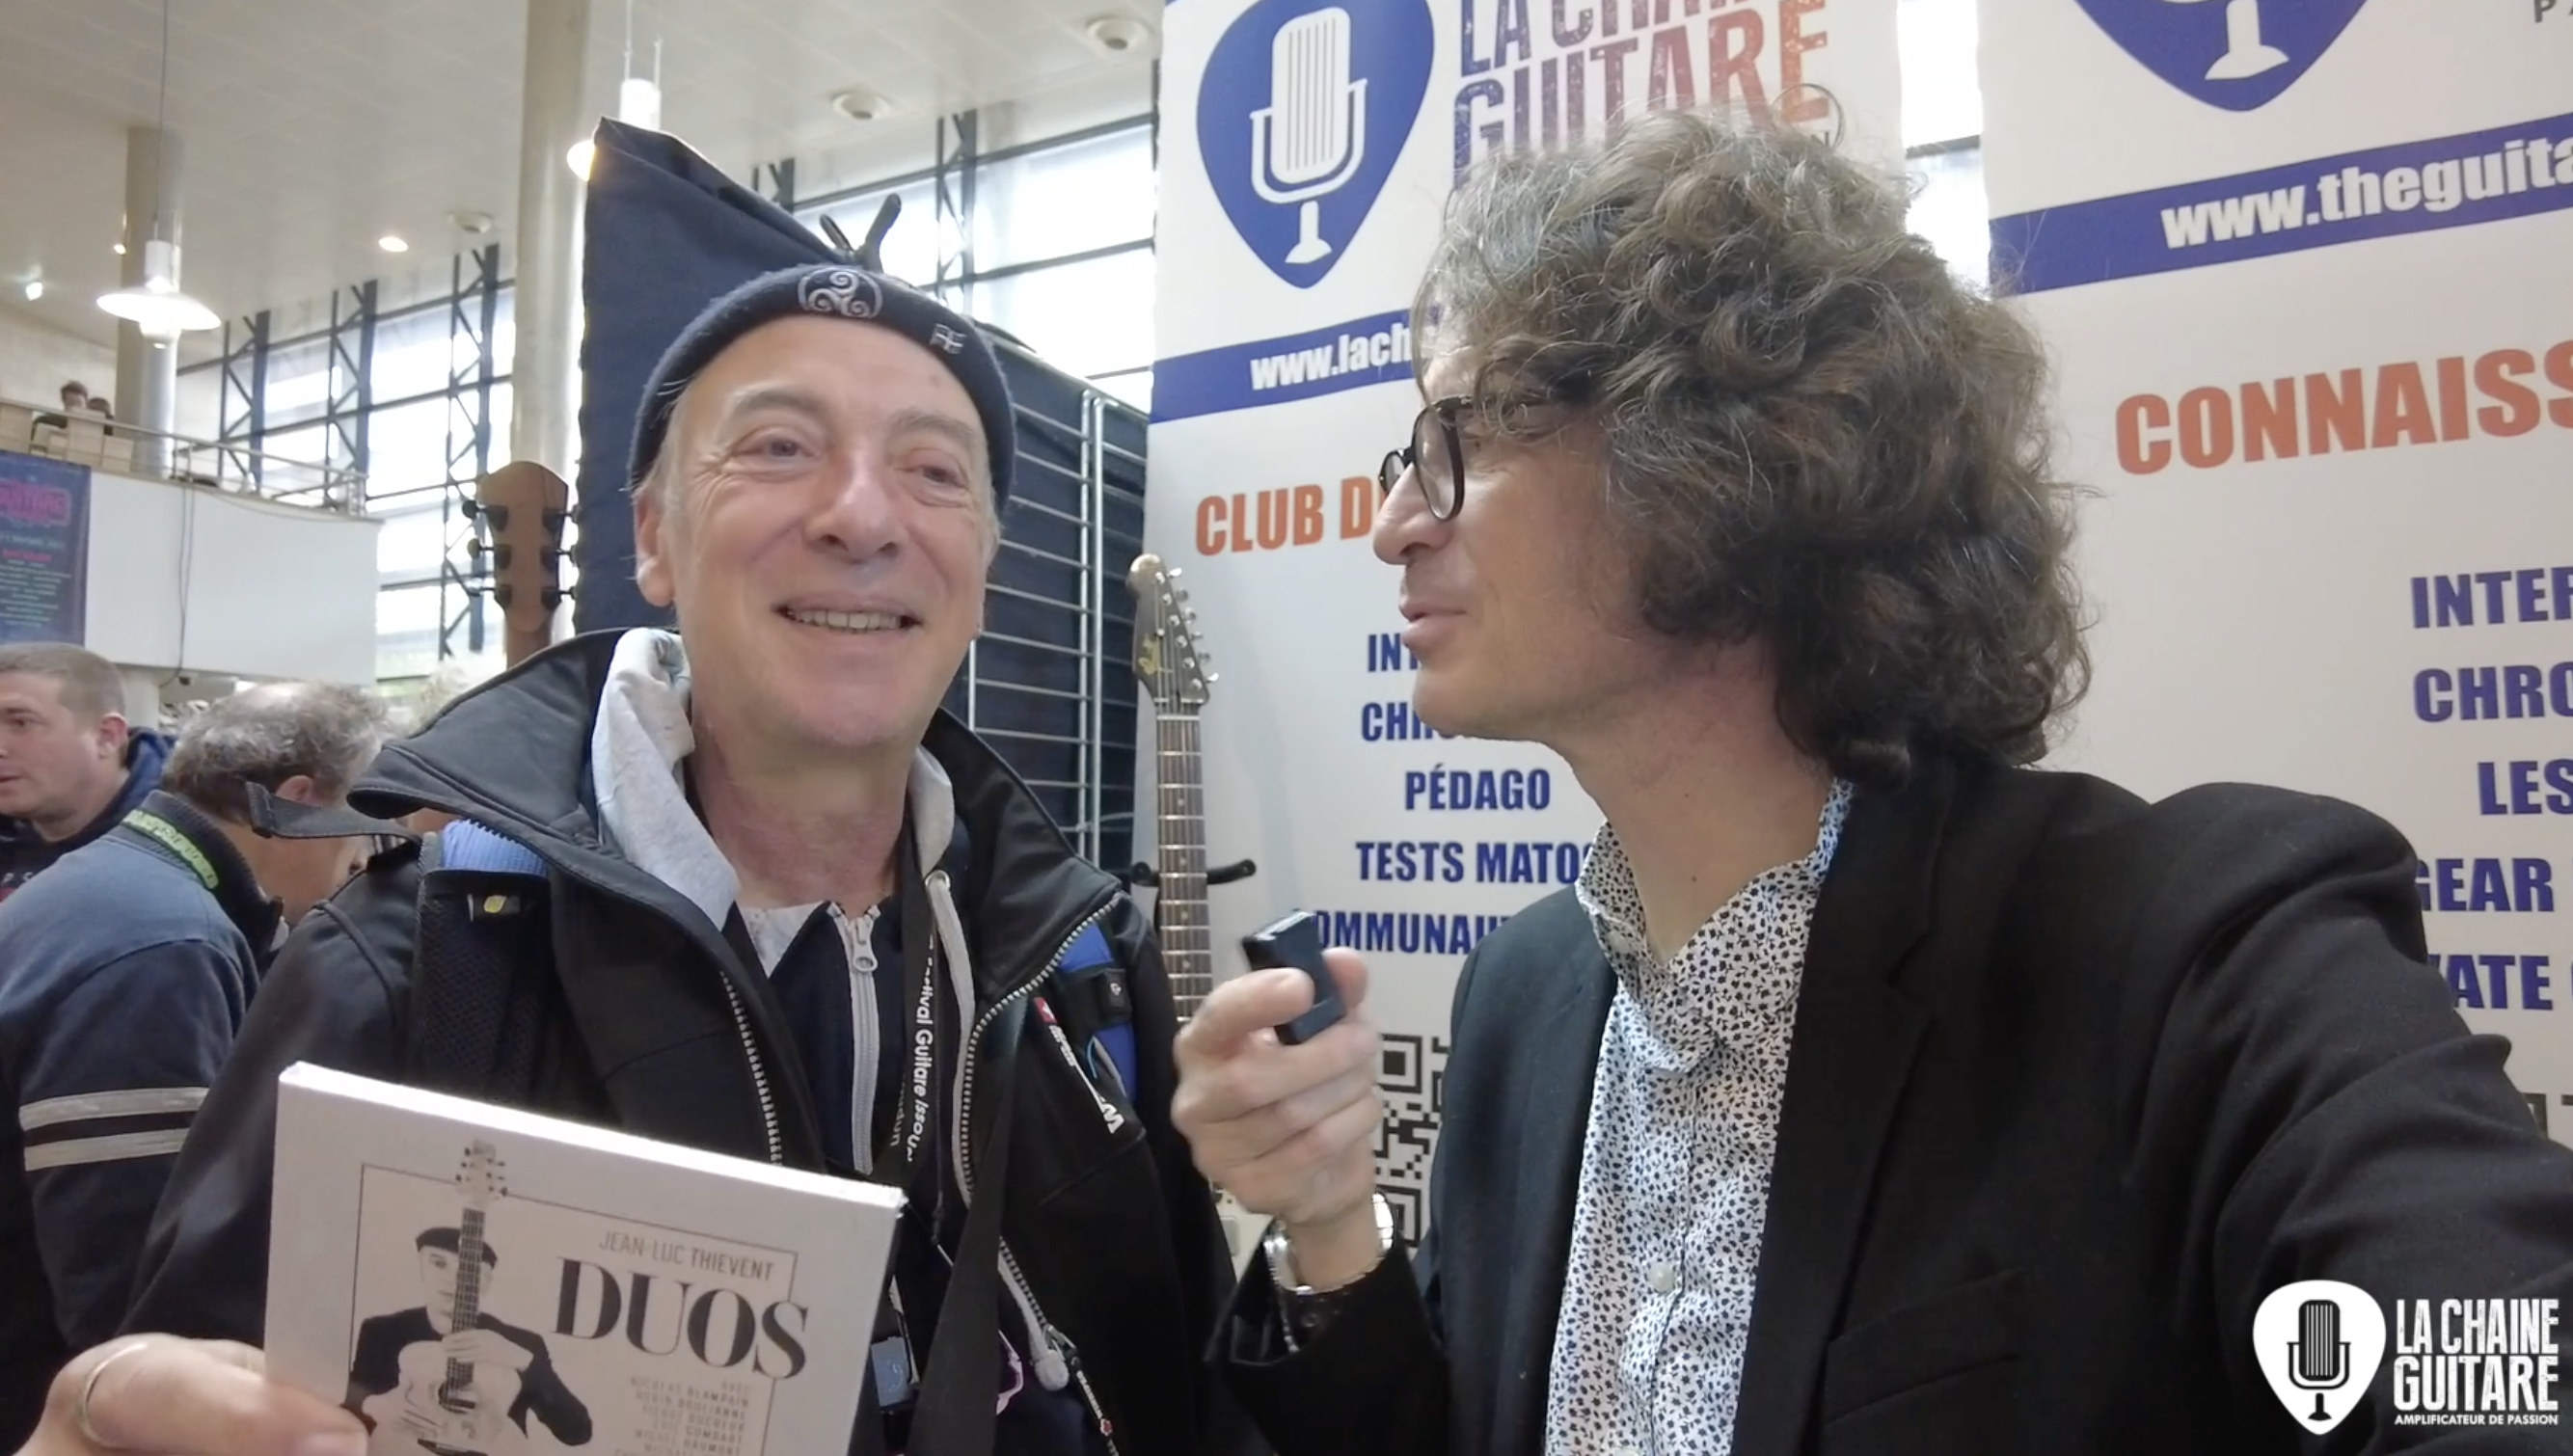 Jean-Luc Thiévent, interview express au Festival Guitare Issoudun